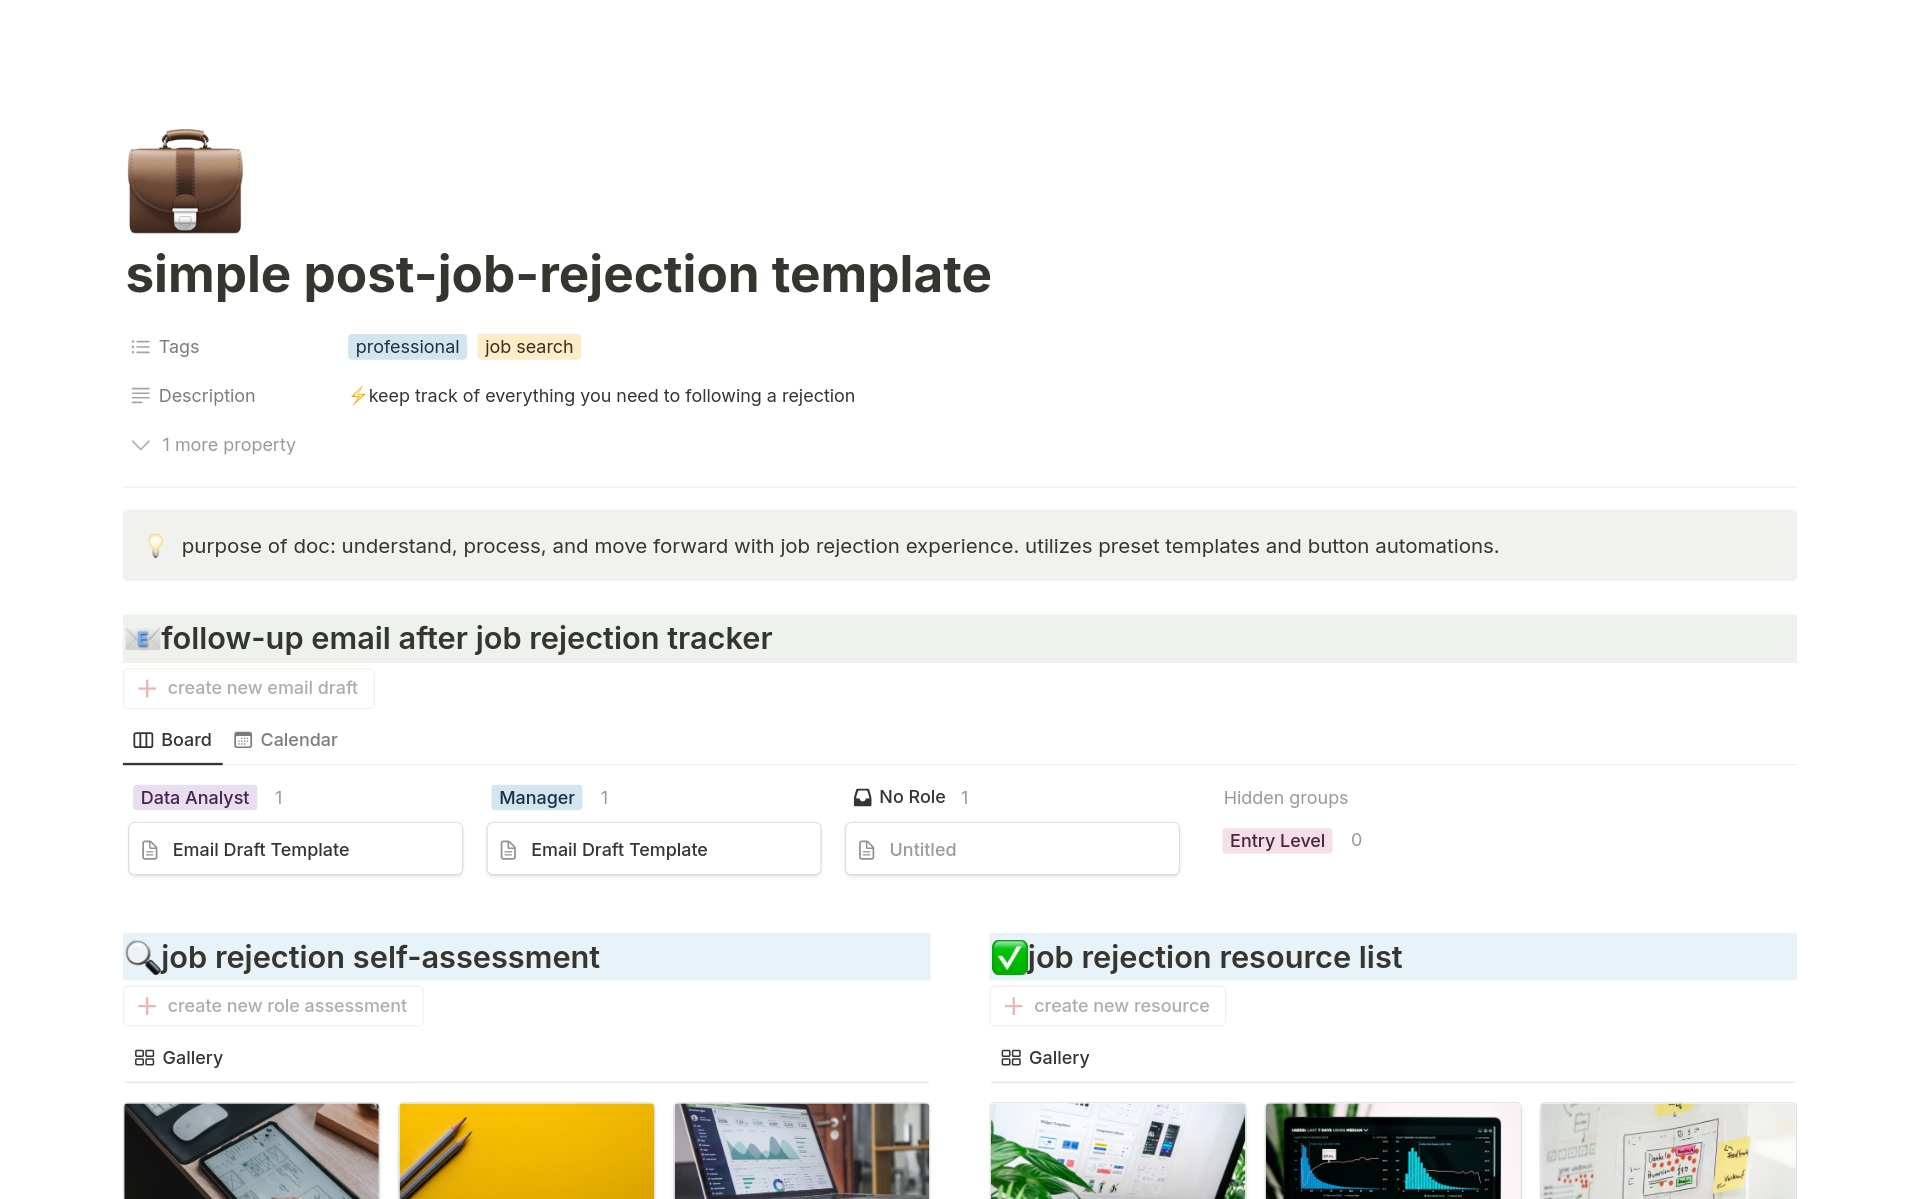 Aperçu du modèle de simple post-job-rejection tracker